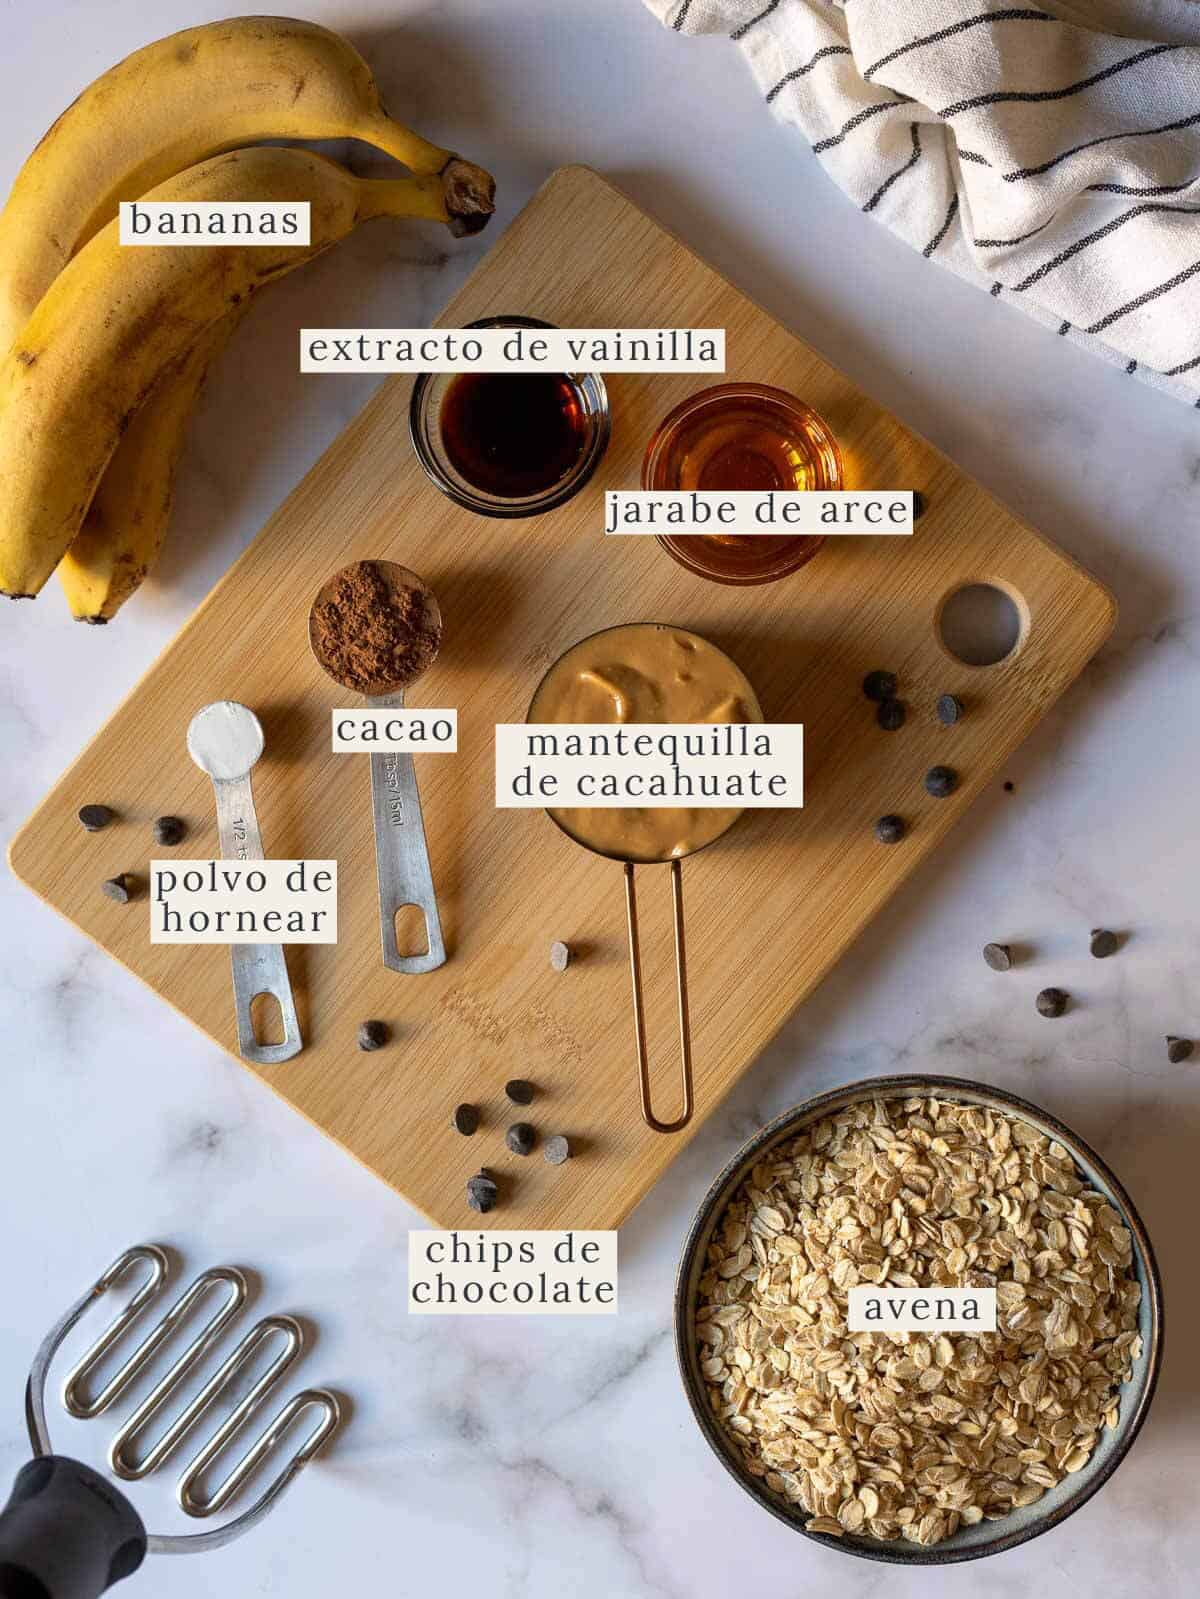 ingredientes para las barritas de avena y chocolate chips.